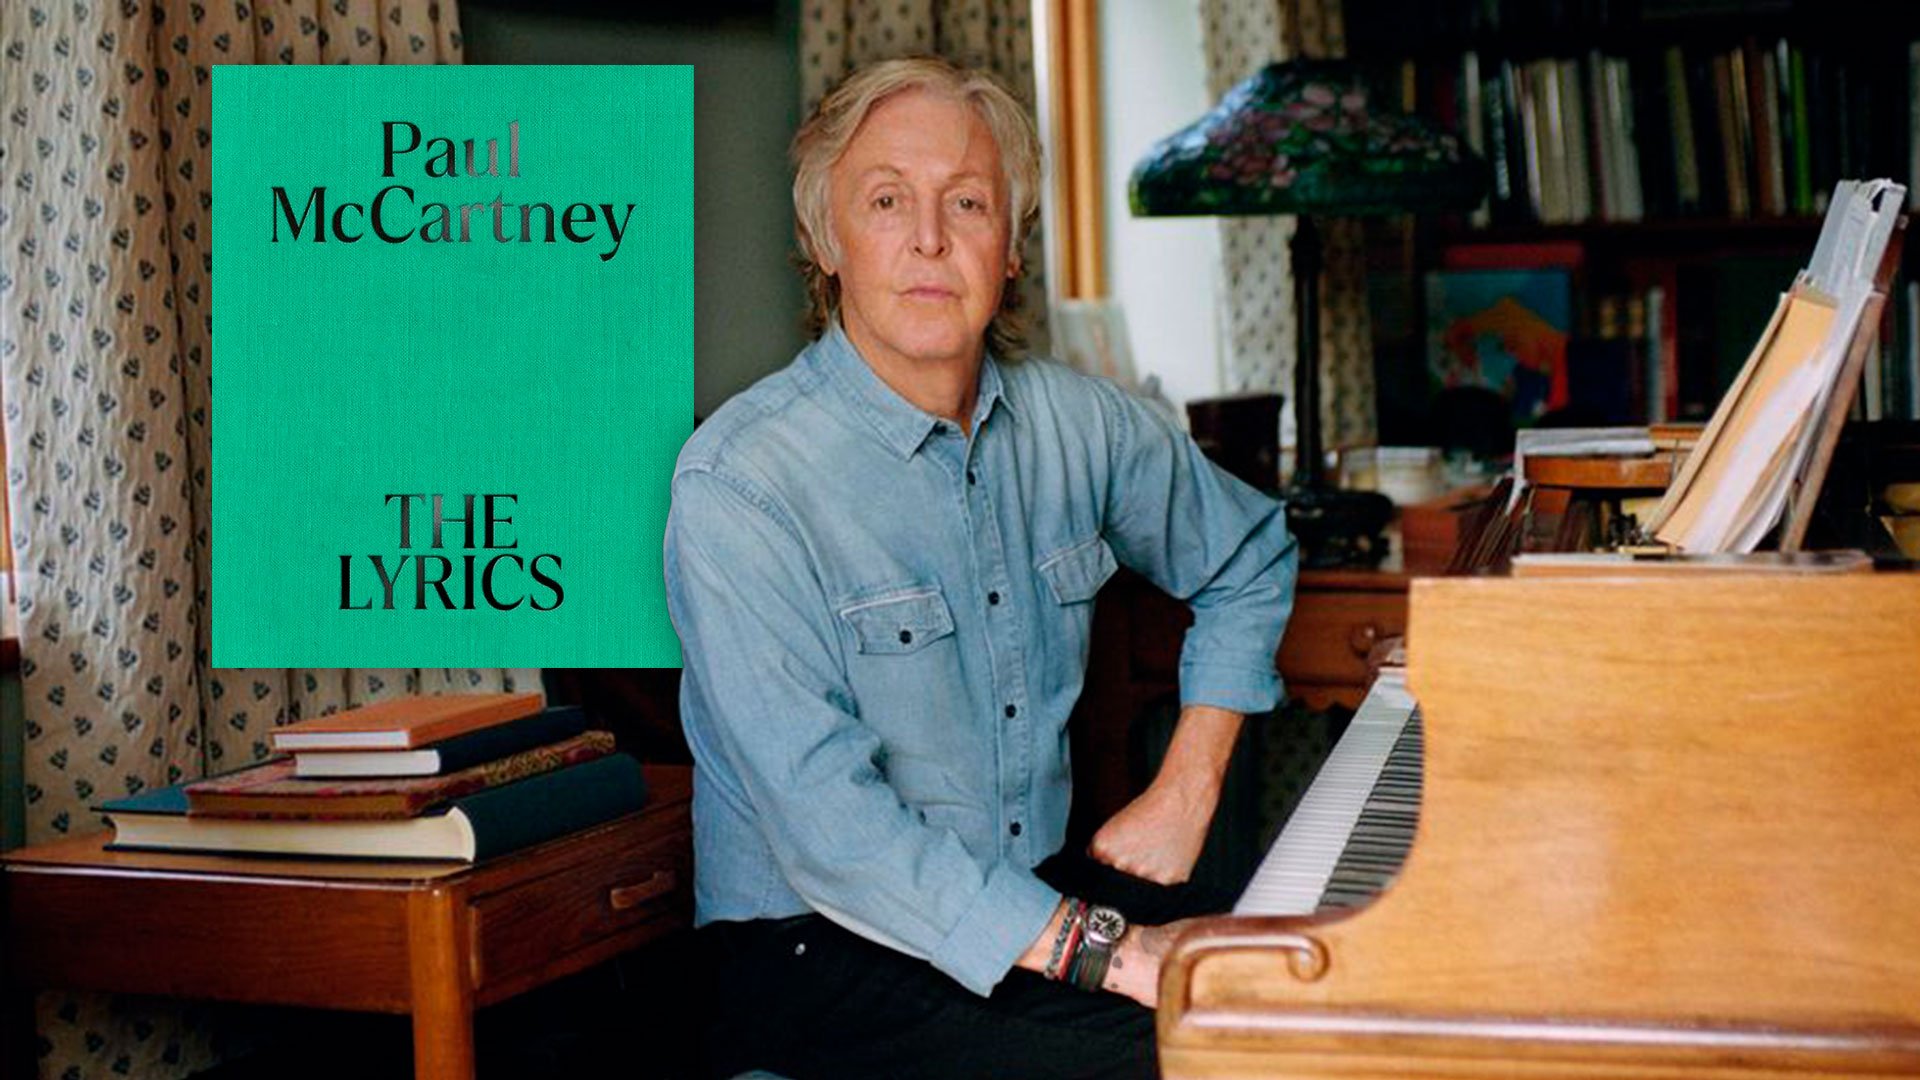 Llega “The Lyrics”, la autobiografía en 154 canciones de Paul McCartney